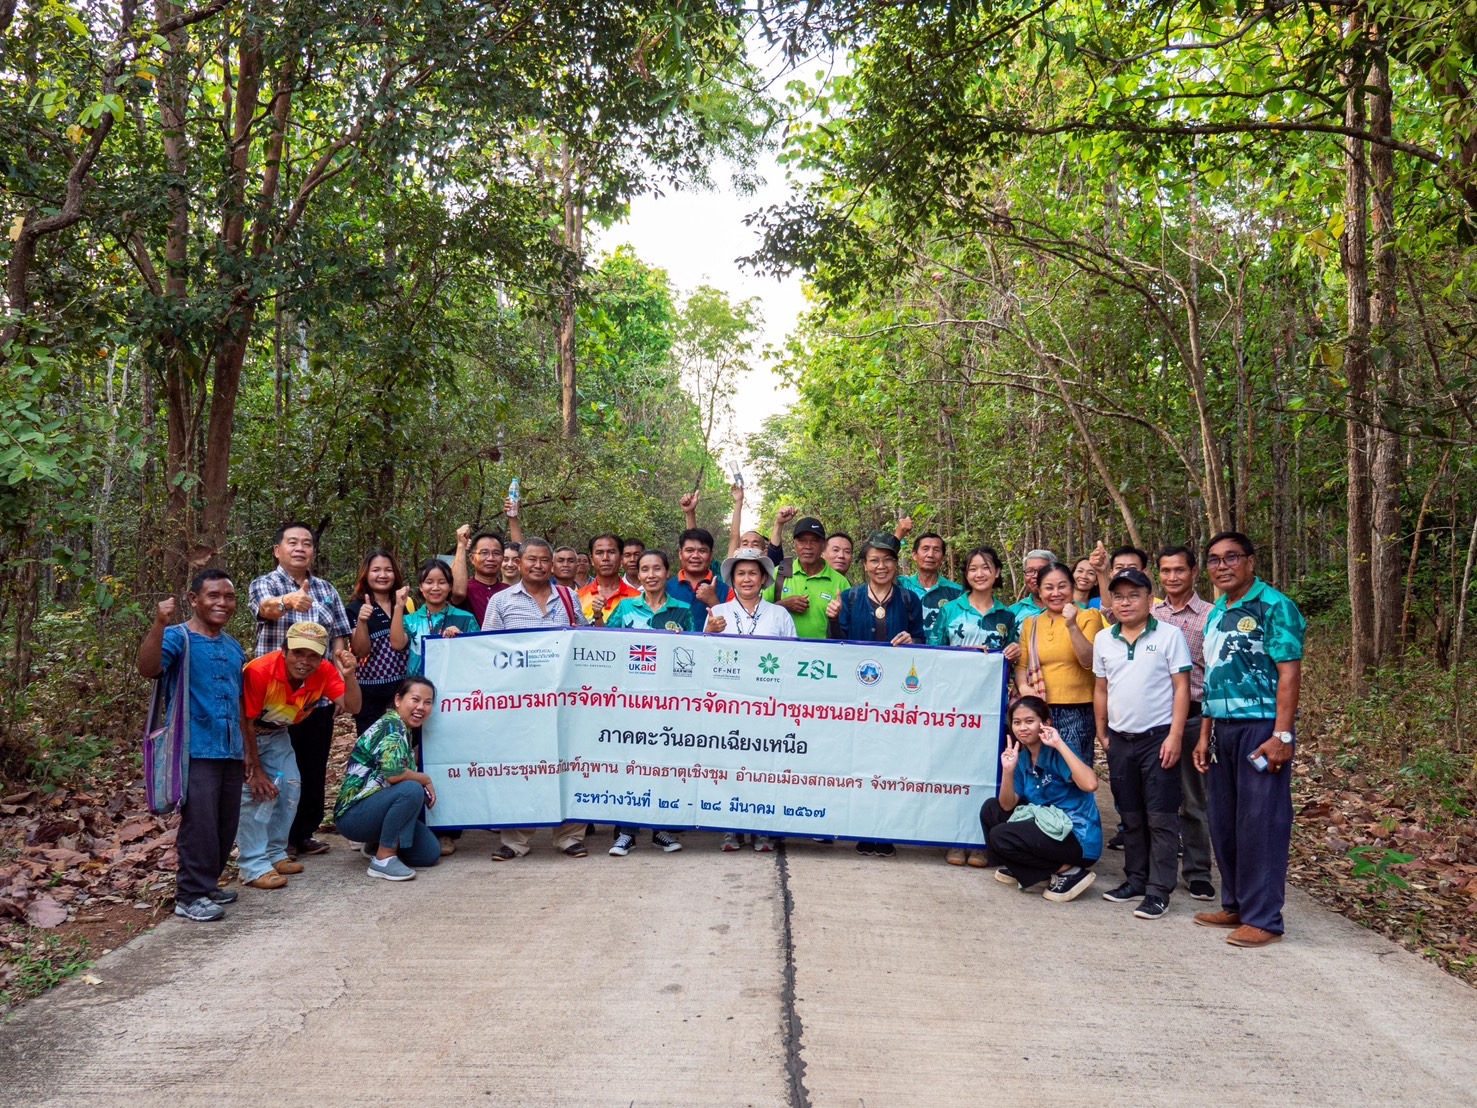 นักจัดการป่าไม้ภาคพลเมืองจากภาคตะวันออกเฉียงเหนือฝึกอบรมการจัดทำแผนการจัดการป่าชุมชนอย่างมีส่วนร่วม